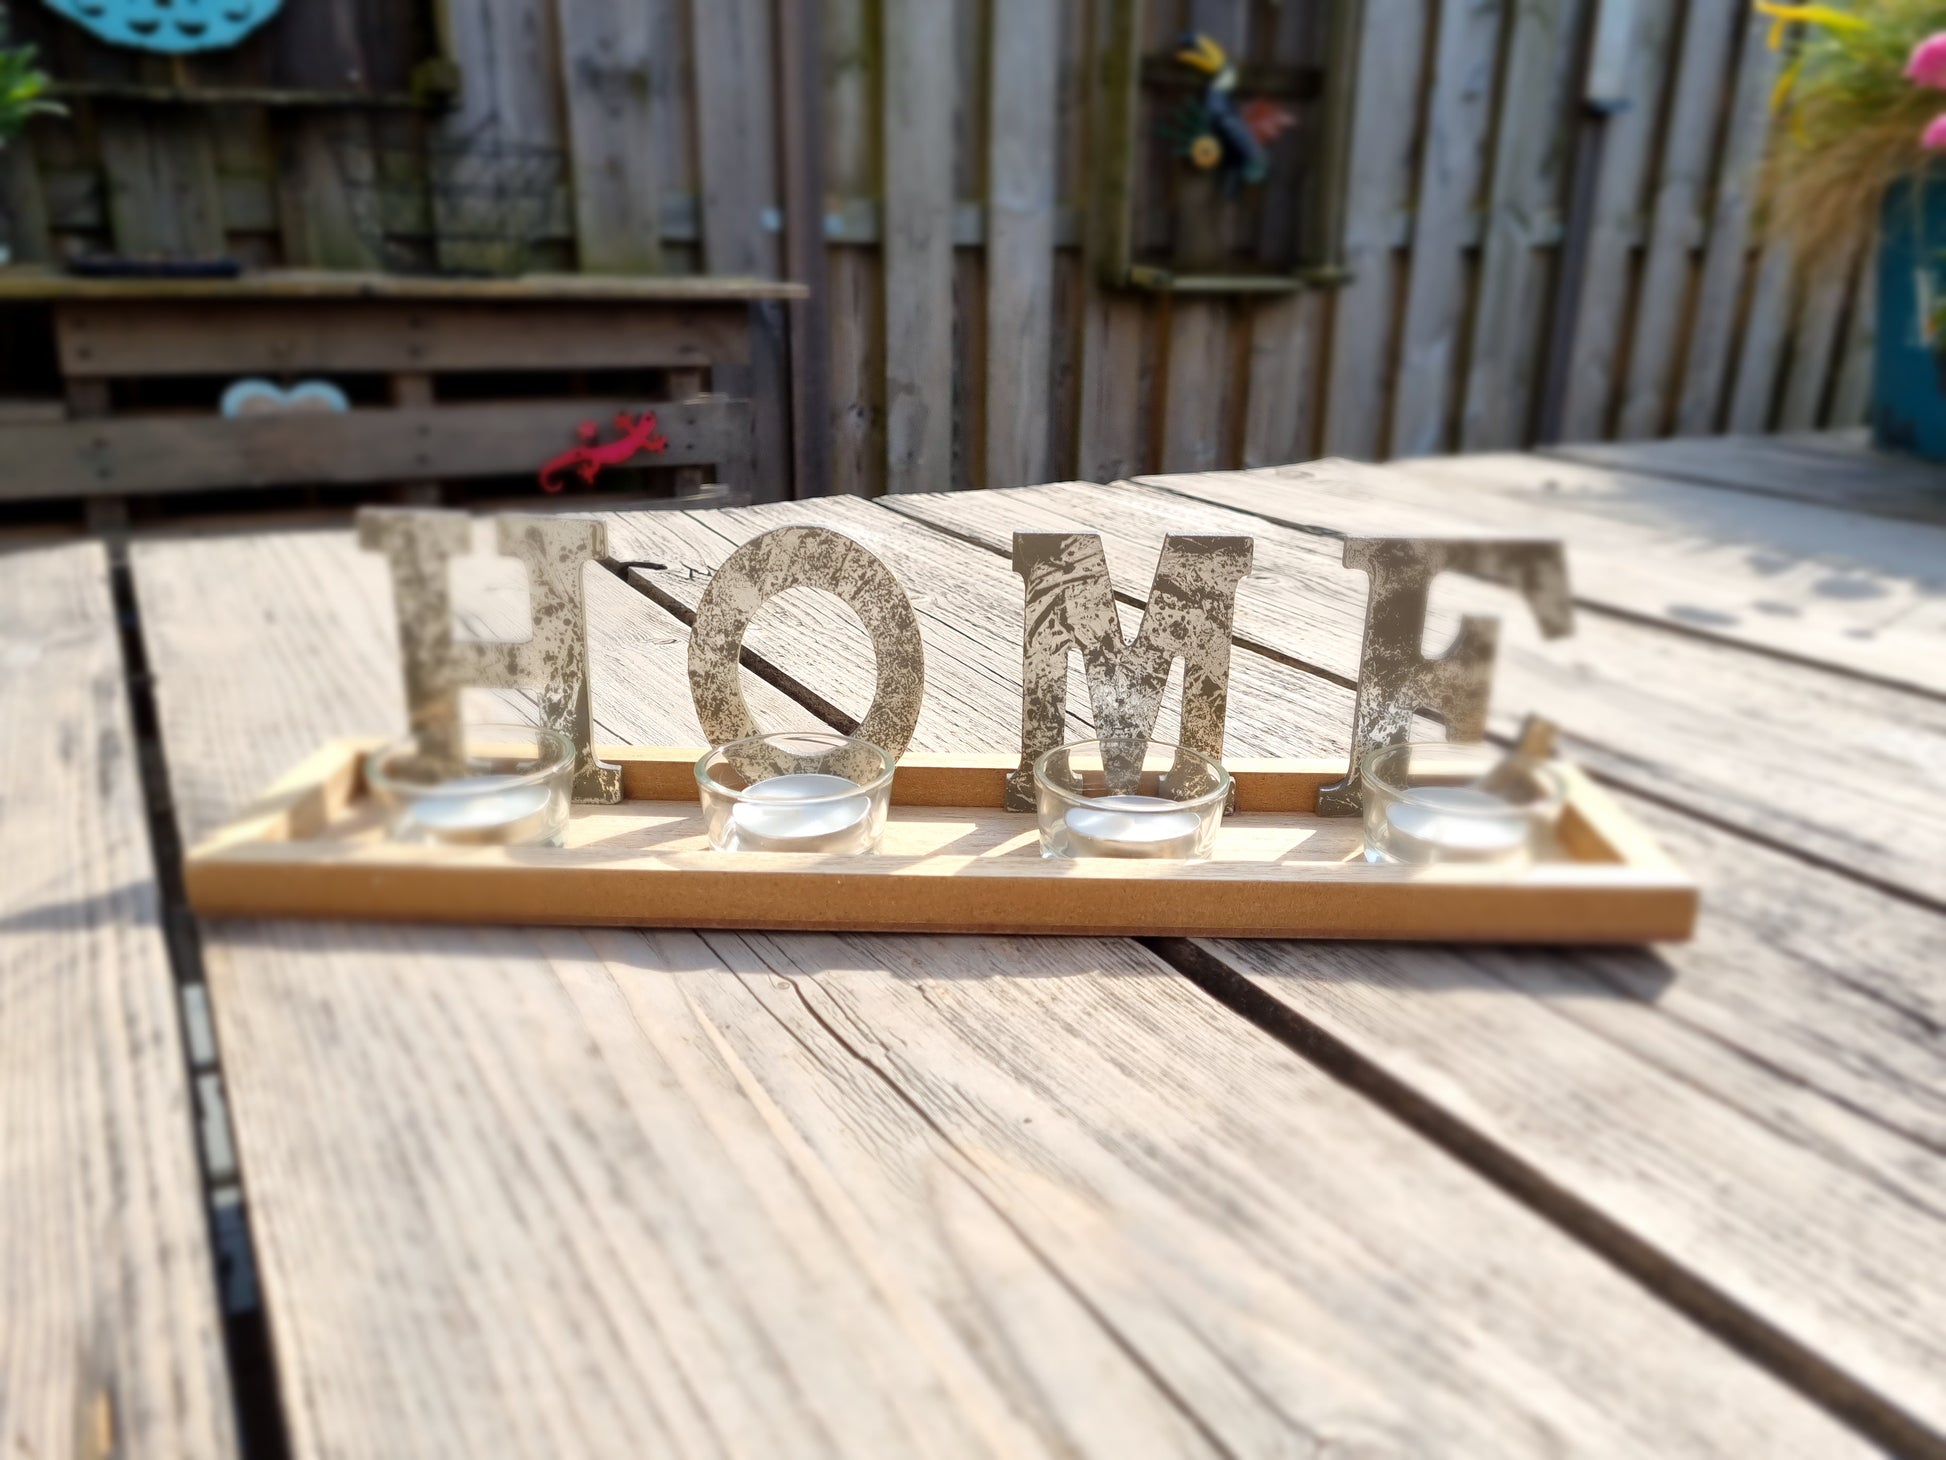 Waxinehouder op houtendienblad met letters HOME